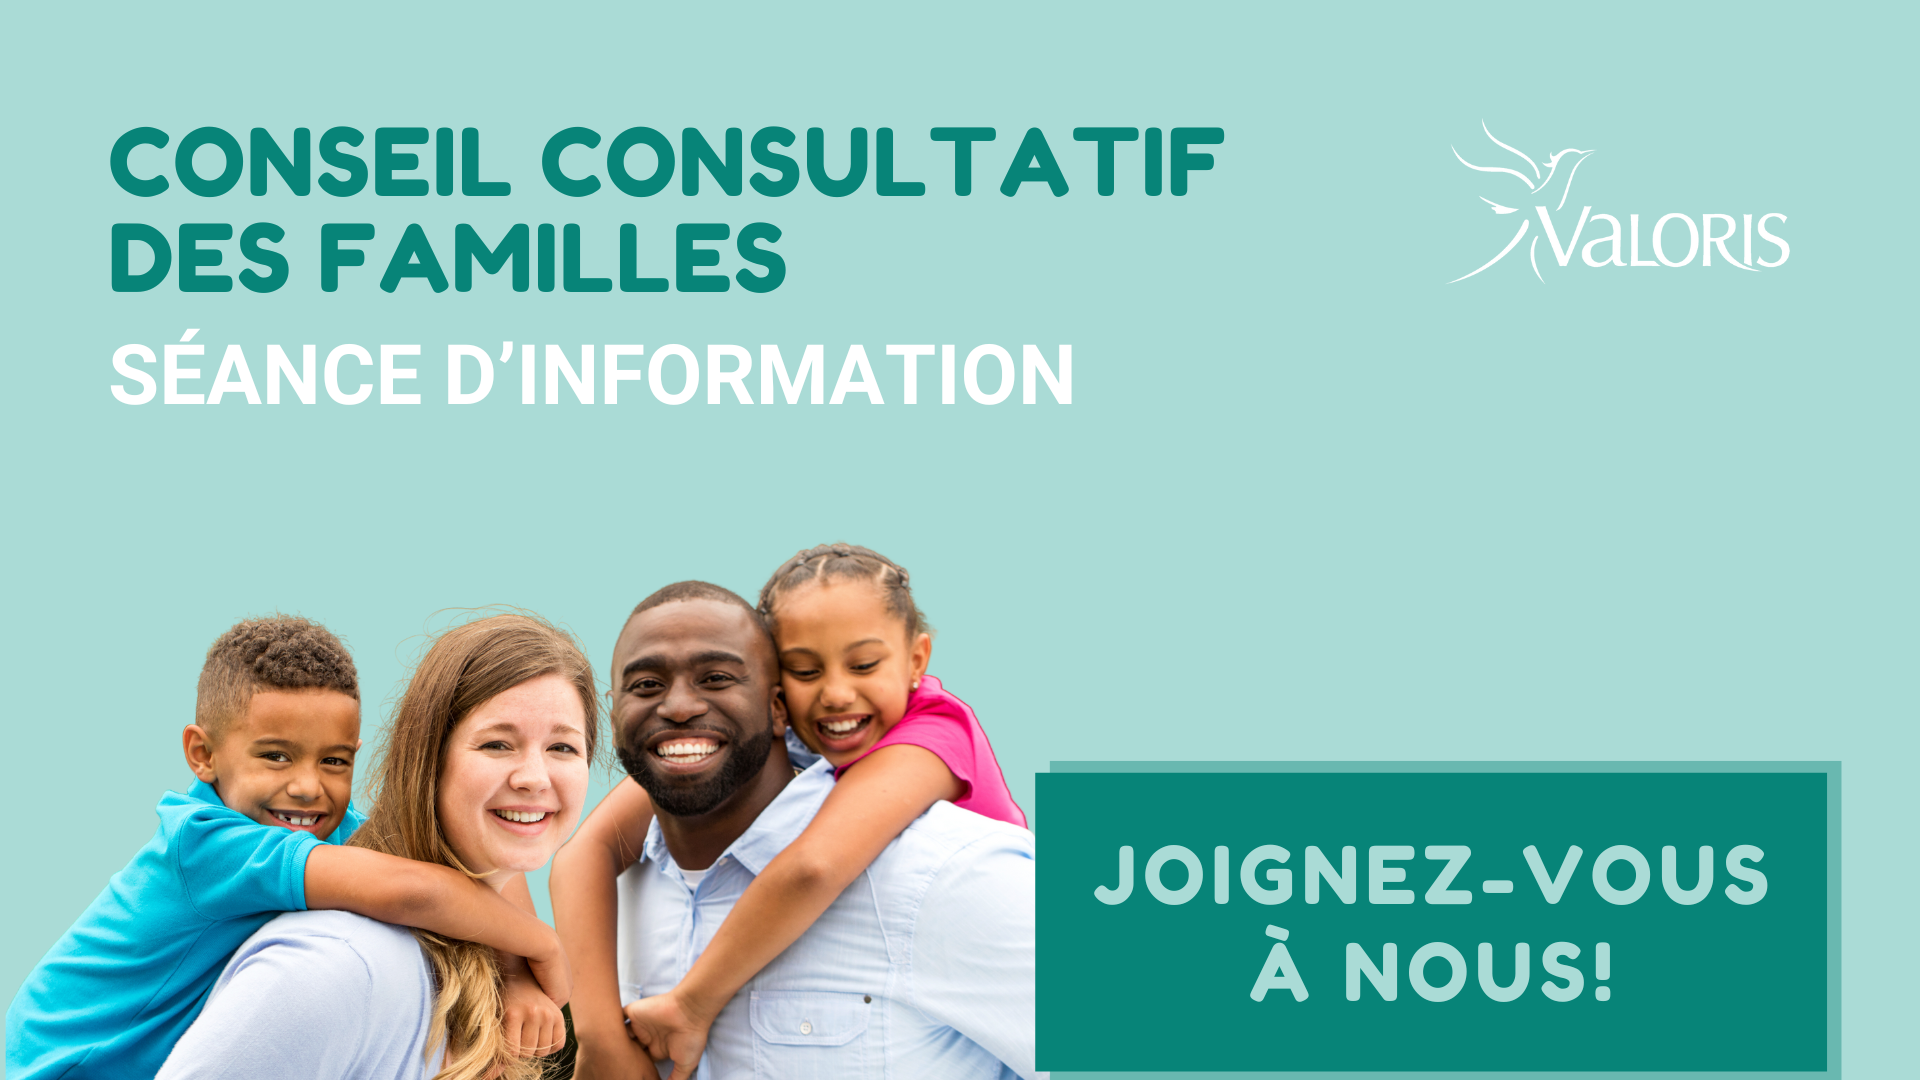 Image d'une famille souriante avec les mots session d'information pour le conseil consultatif des familles. Logo de Valoris